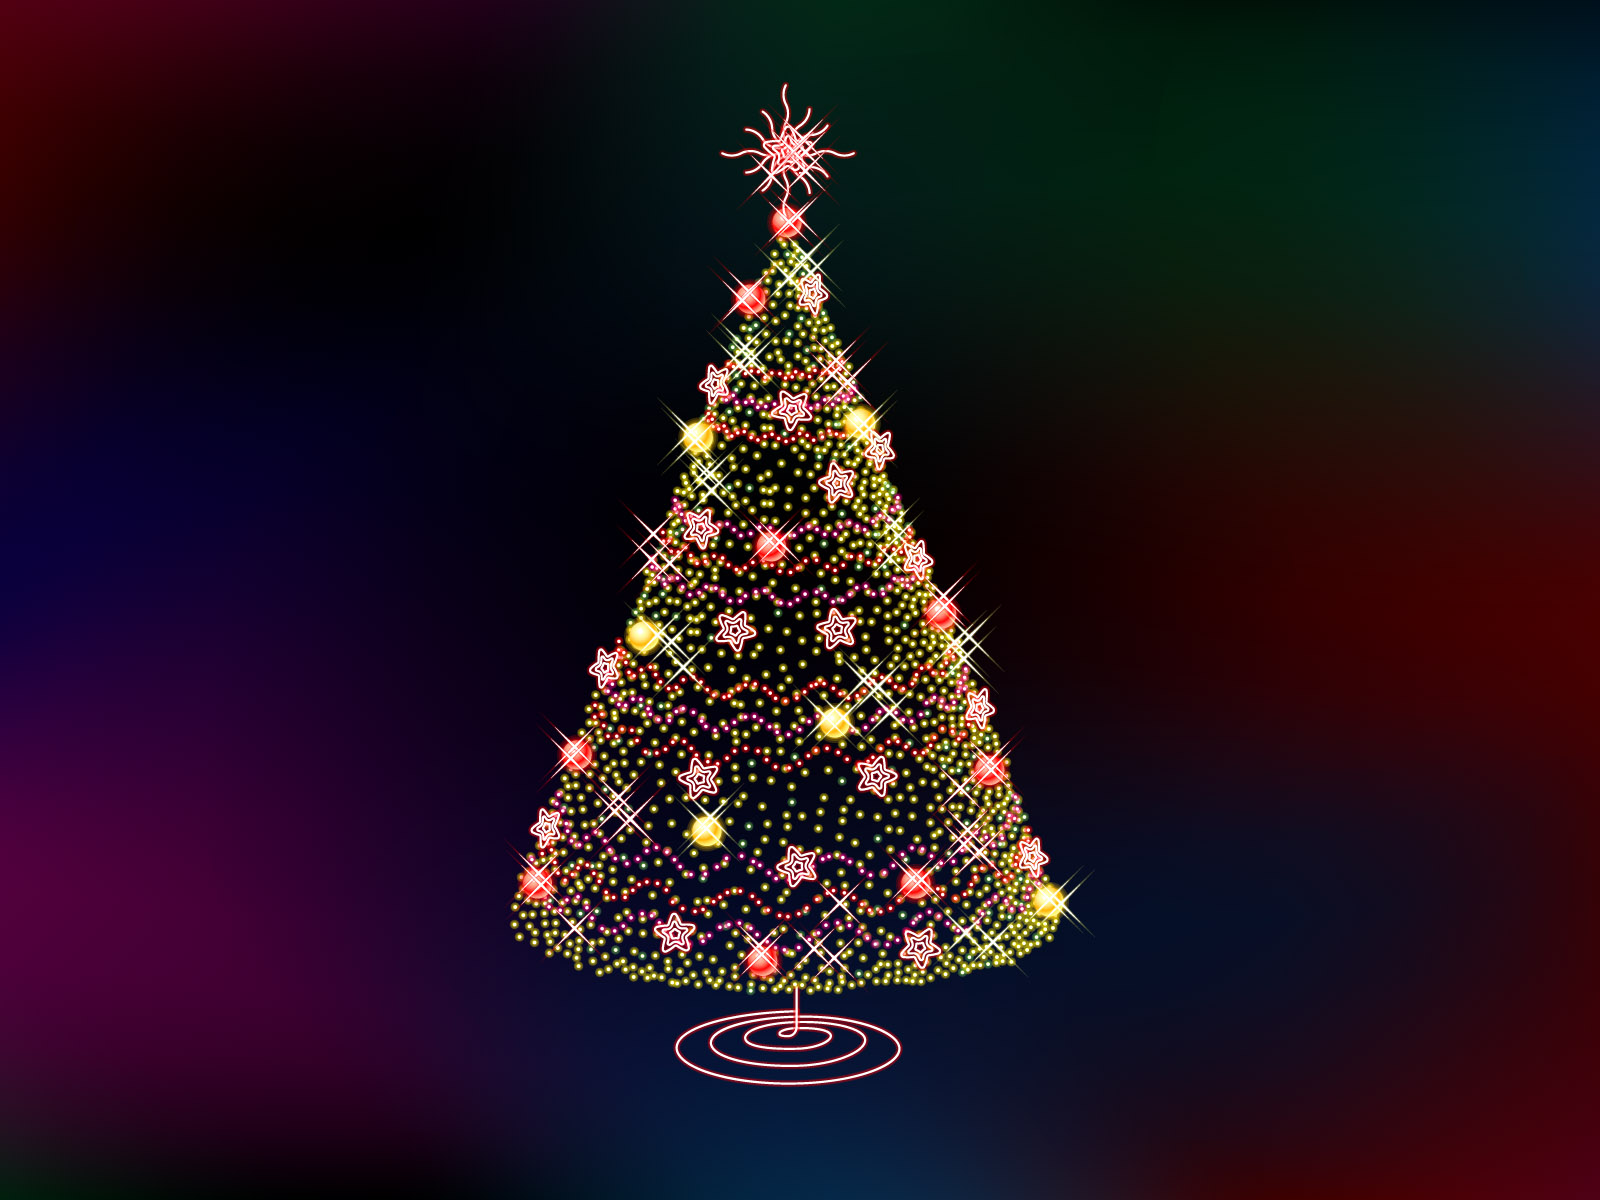 weihnachtsbaum desktop hintergrund,weihnachtsbaum,baum,weihnachtsdekoration,weihnachtsschmuck,weihnachten